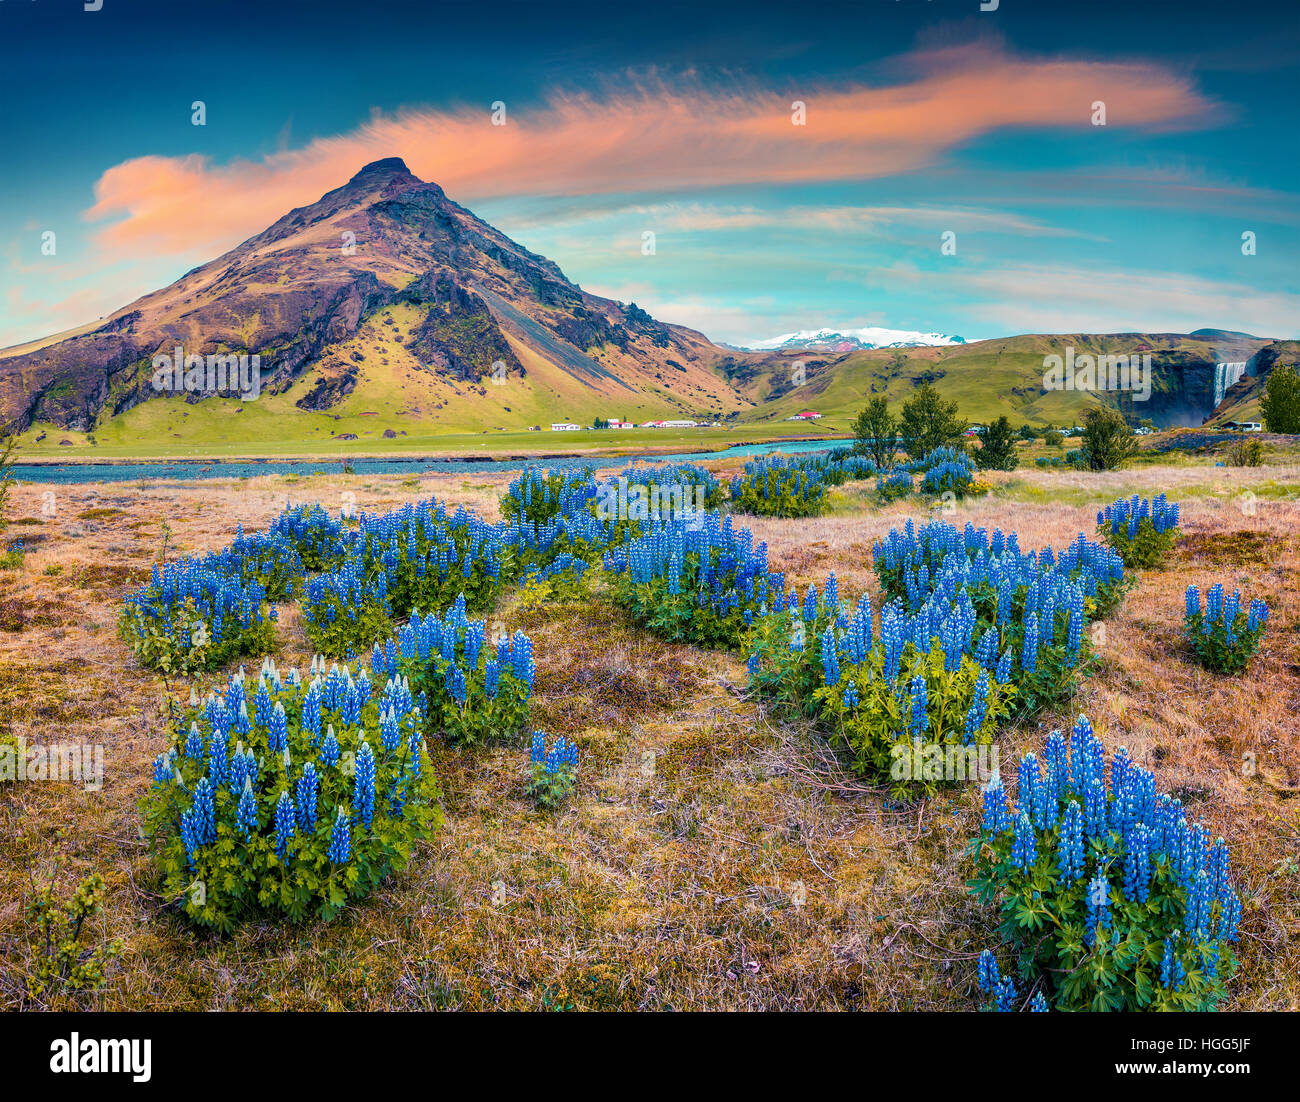 Lupin en fleurs fleurs à proximité du majestueux Skogafoss chute d'eau dans le sud de l'Islande, l'Europe. Paysage d'été coloré dans le pays. Banque D'Images